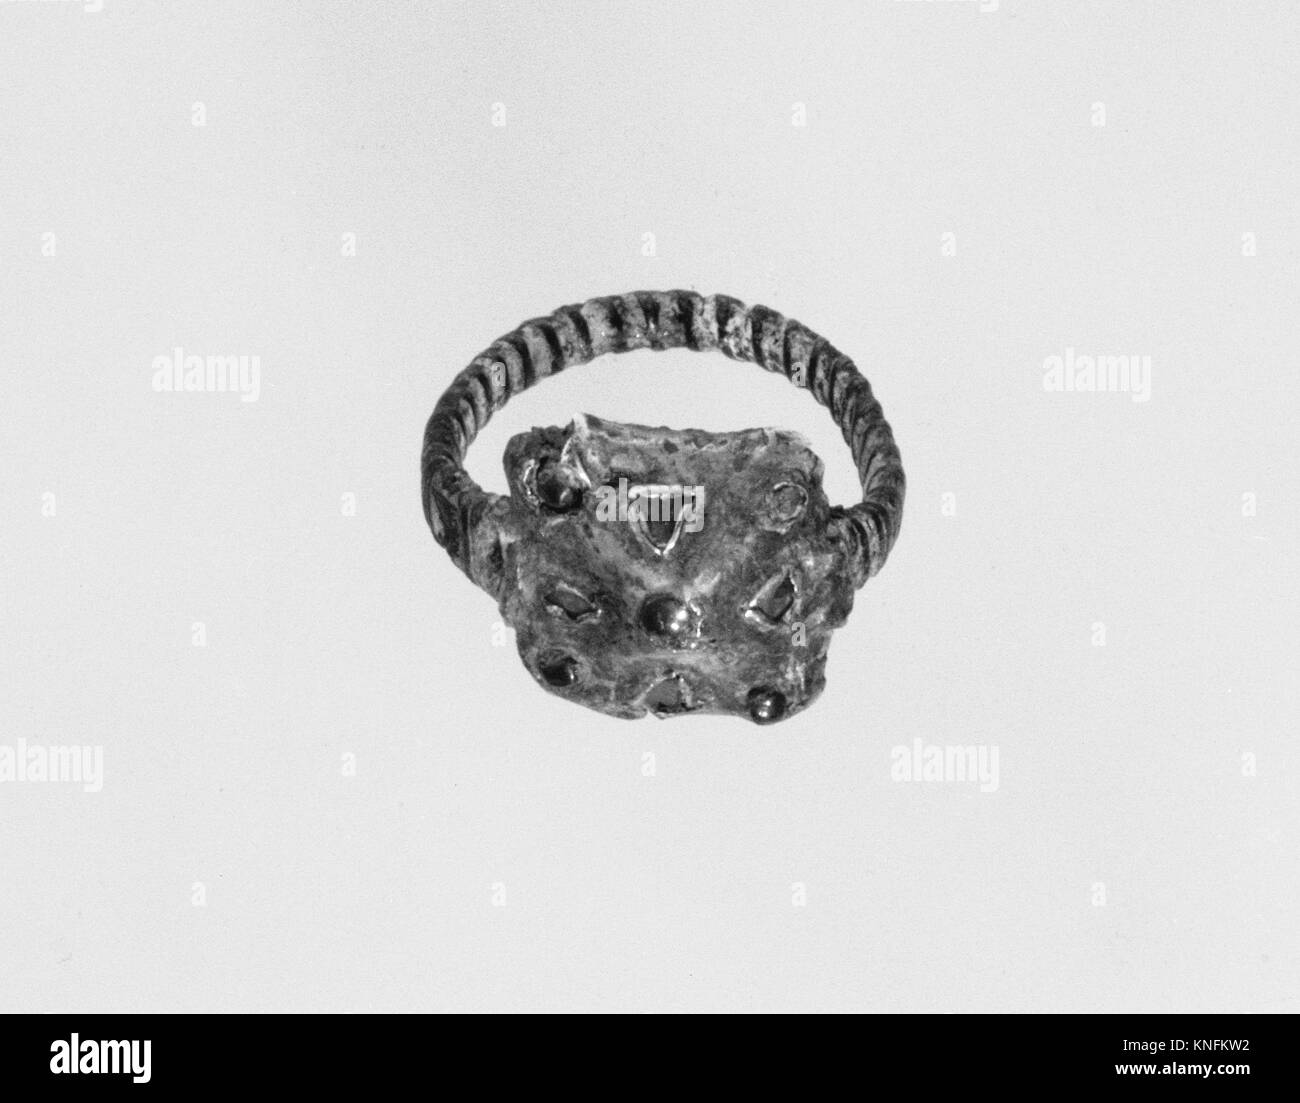 Anneau de doigt atteint 205767 465293 Frankish, anneau de doigt, ca. 600, alliage de cuivre bande ?, argent cadre avant de poudre d'or, pâte de verre ou grenat, Total : 1 x 13/16 x 1/2 in. (2,6 x 2,1 x 1,3 cm) cadre : 1/2 x 1/2 x 1/4 in. (1,3 x 1,3 x 0,7 cm). Le Metropolitan Museum of Art, New York. Don de J. Pierpont Morgan, 1917 (17,192.226) Banque D'Images